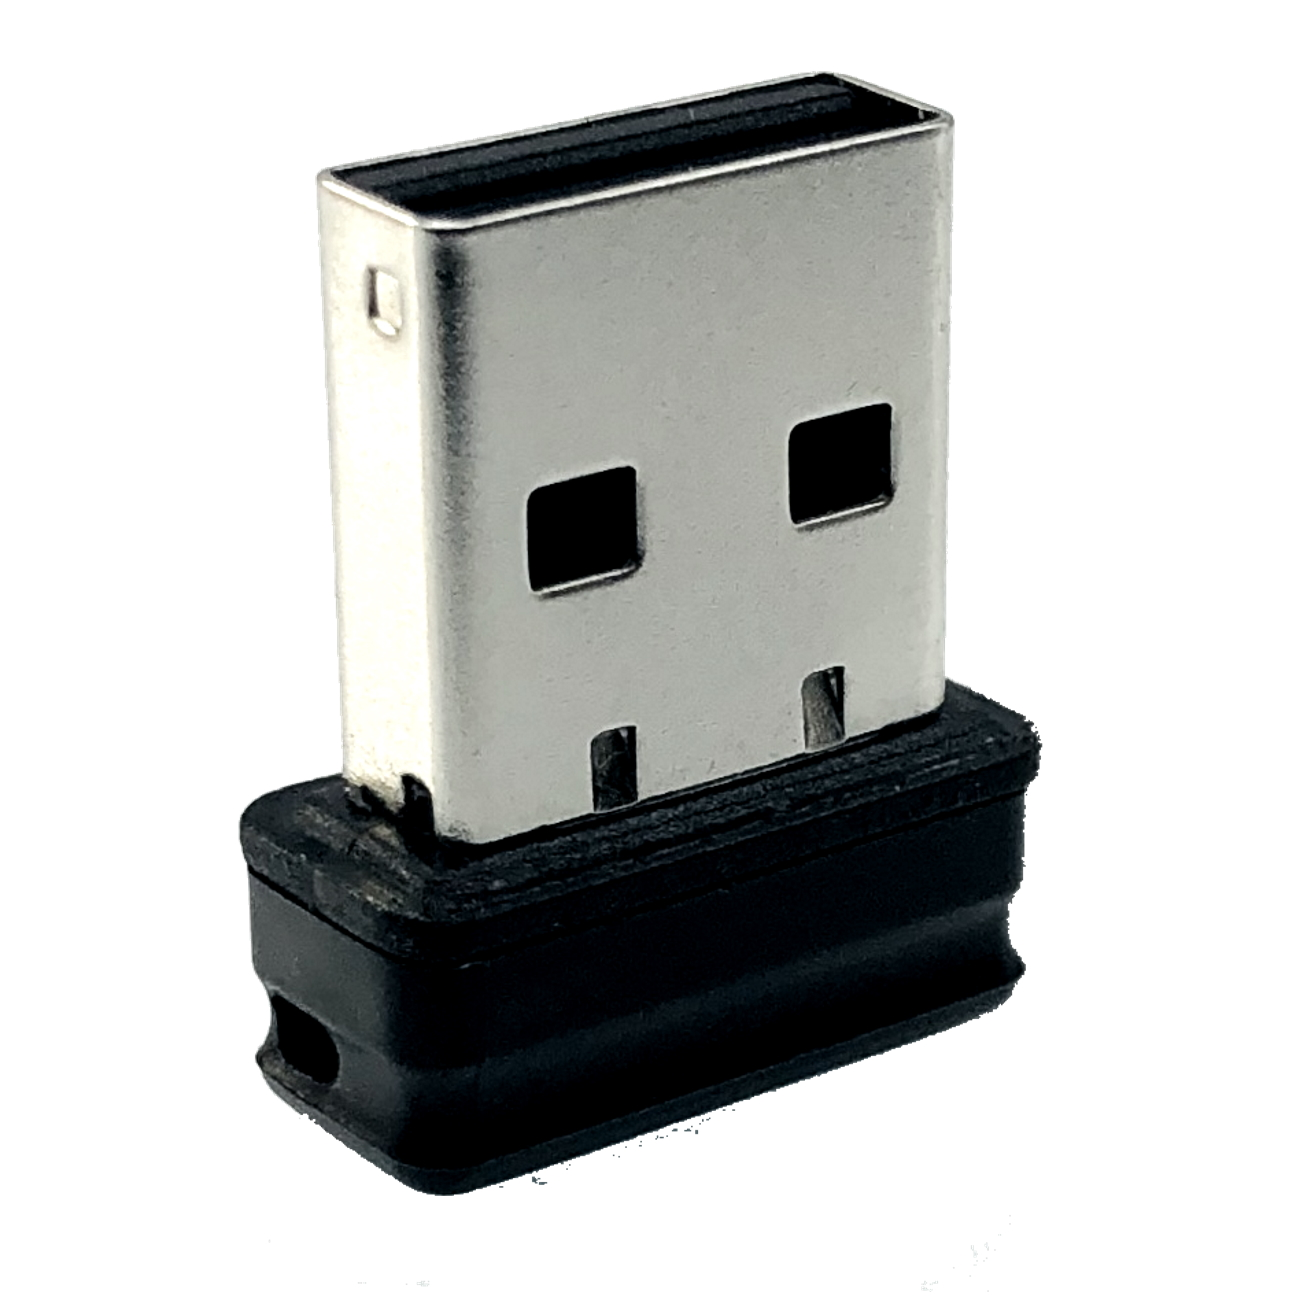 P1 (Schwarz, Mini USB-Stick USB ®ULTRA GERMANY 16 GB)